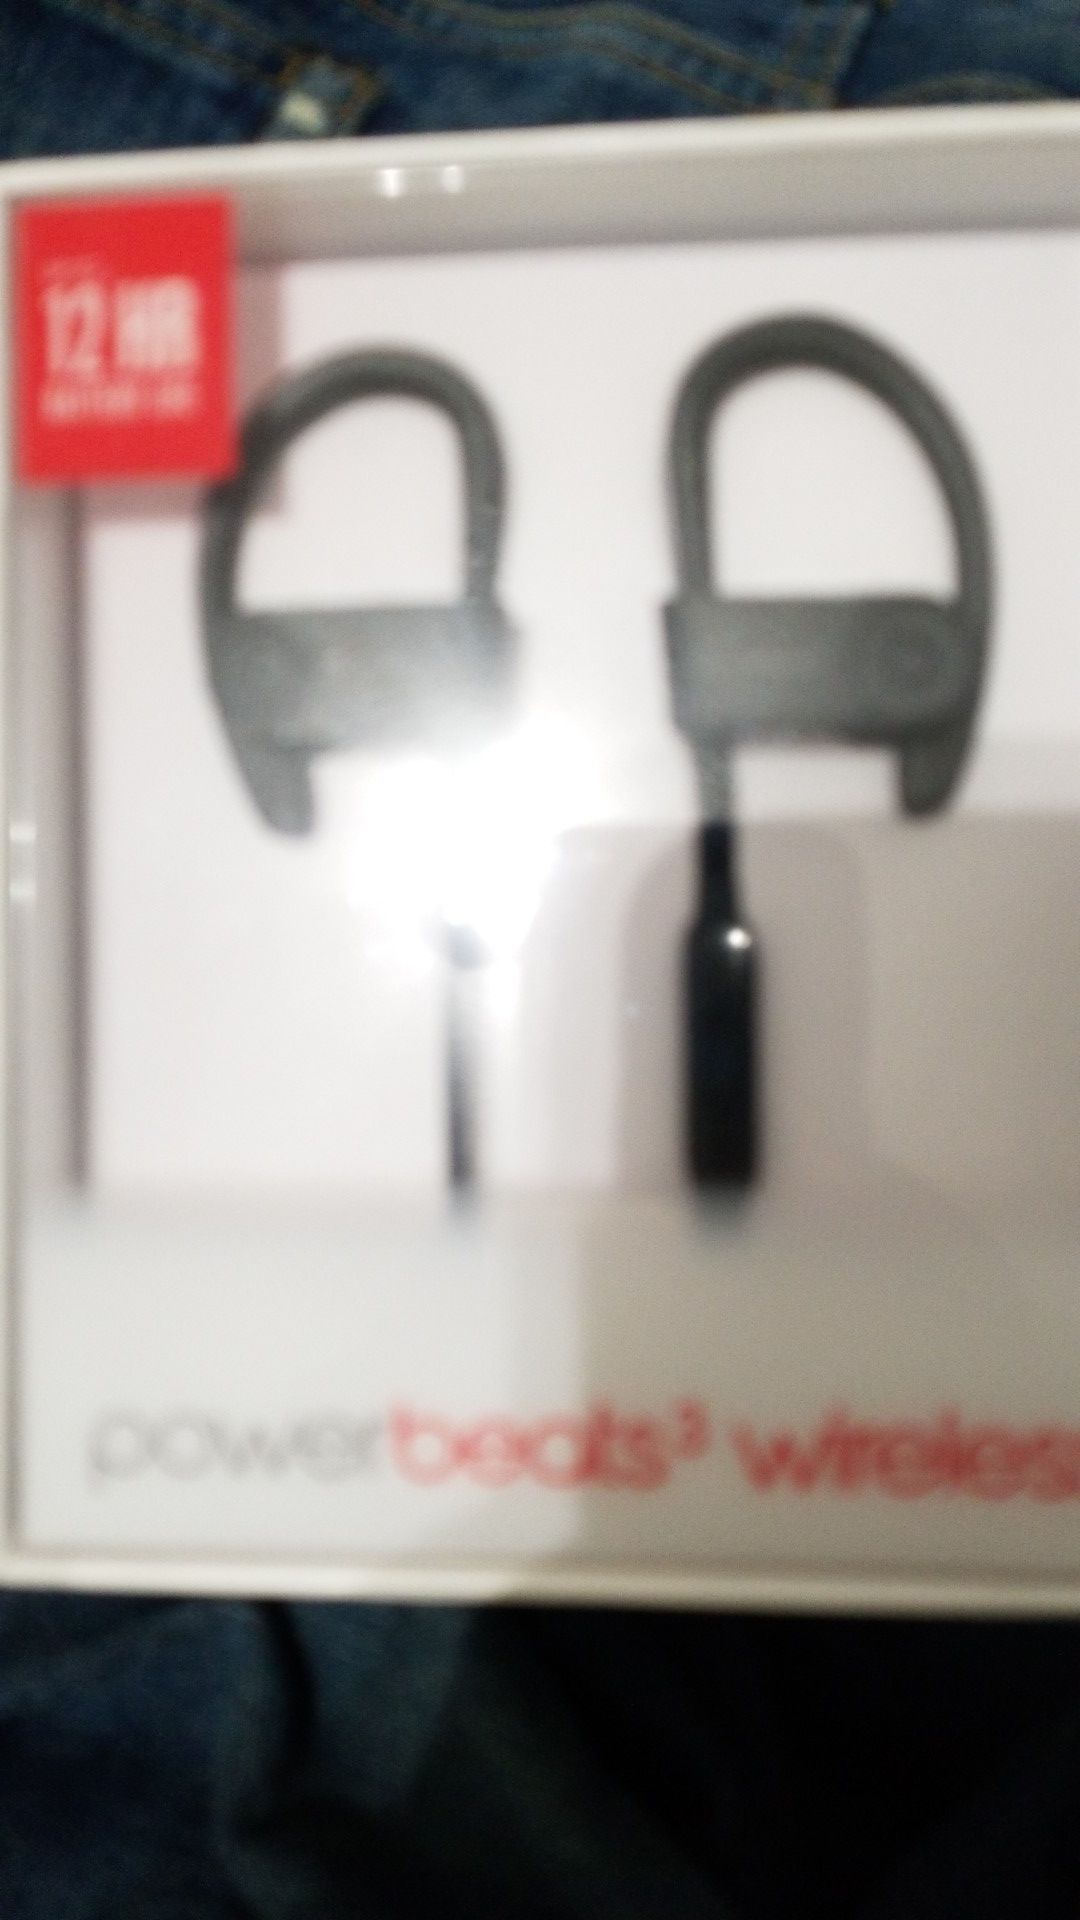 Beats wireless earbuds